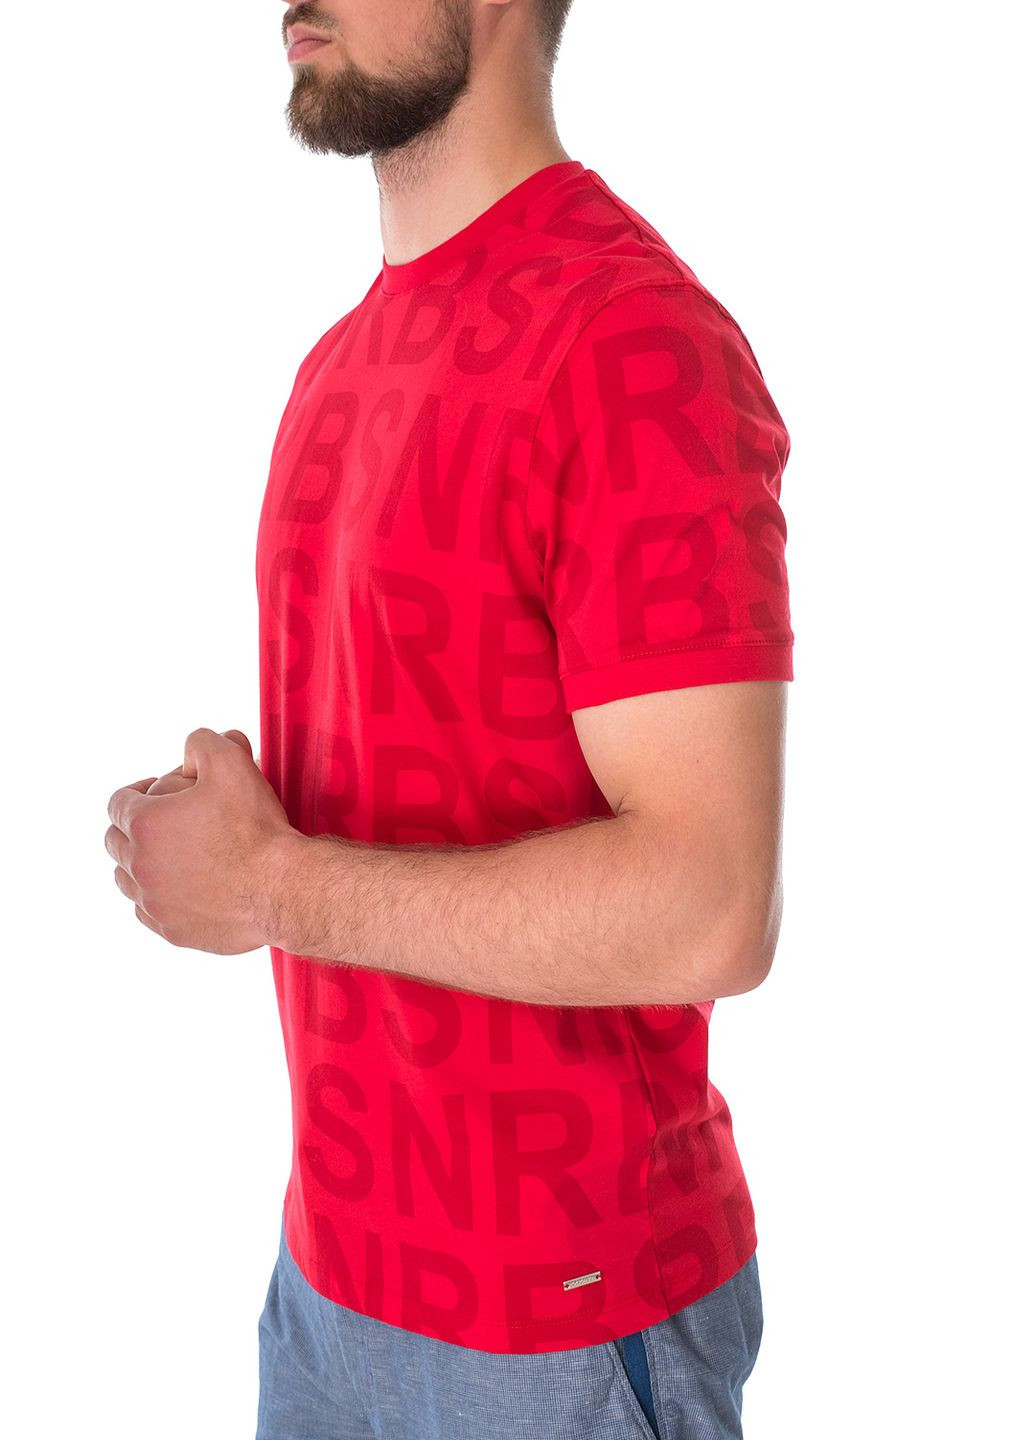 Красная футболка Roy Robson